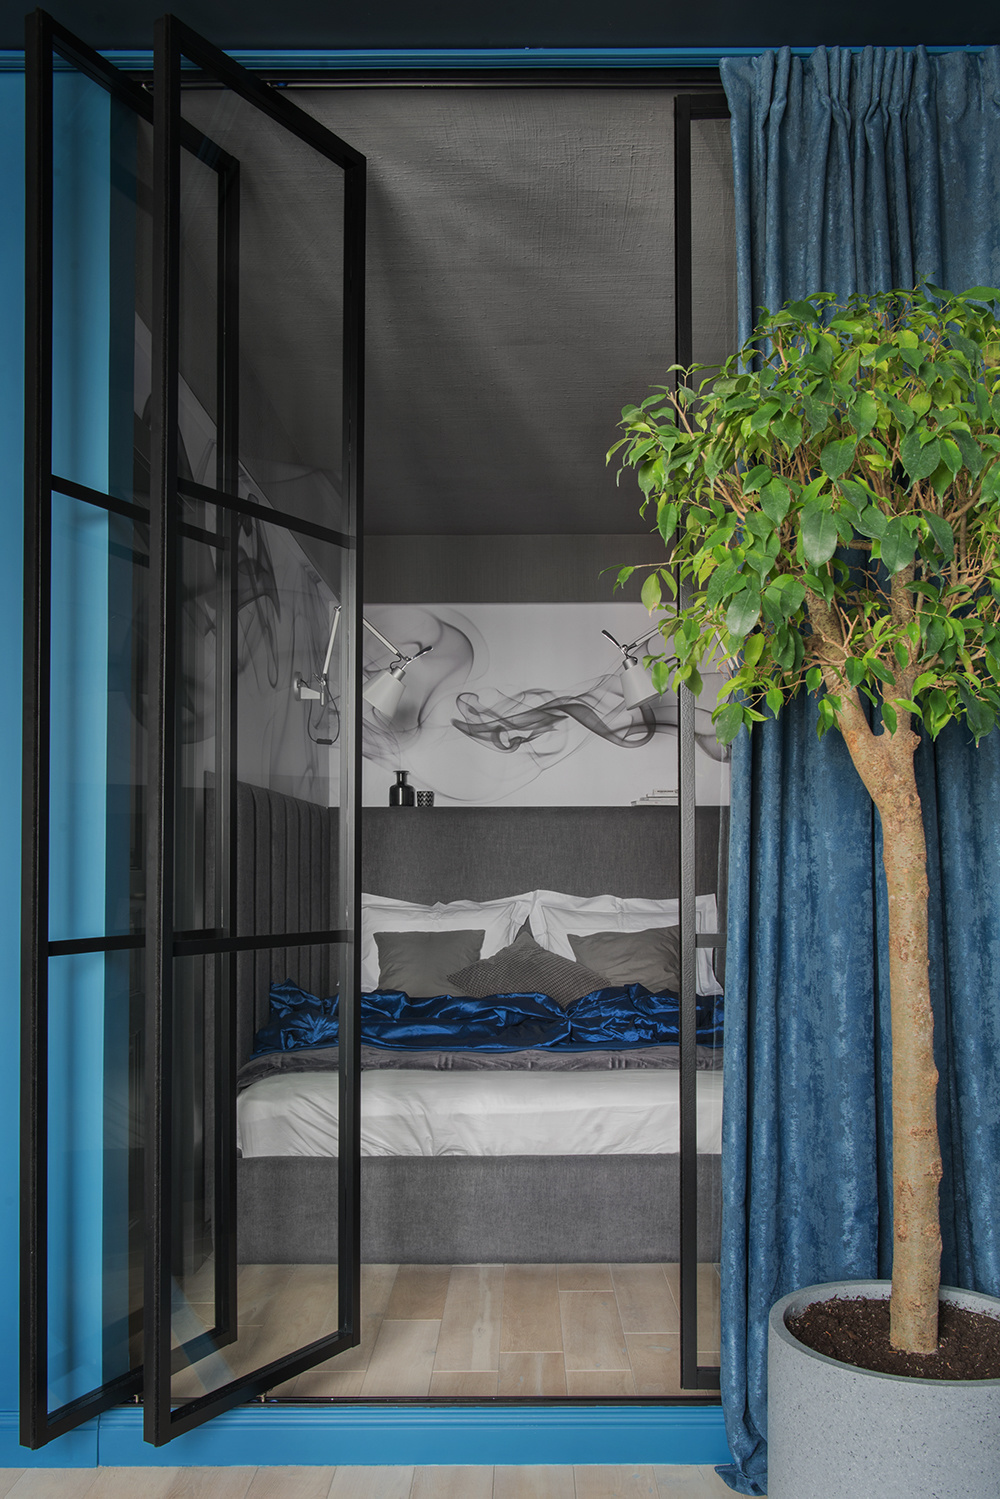 NTK nội thất Dina Vafina đã 'đóng khung' phòng ngủ nhỏ gọn này bằng cửa kính khung màu đen cổ điển. Thêm vào đó, sự kết hợp màu xám sang trọng với màu xanh lam yên tĩnh cùng chậu cây cảnh tươi xanh cho phòng ngủ thêm thư giãn.